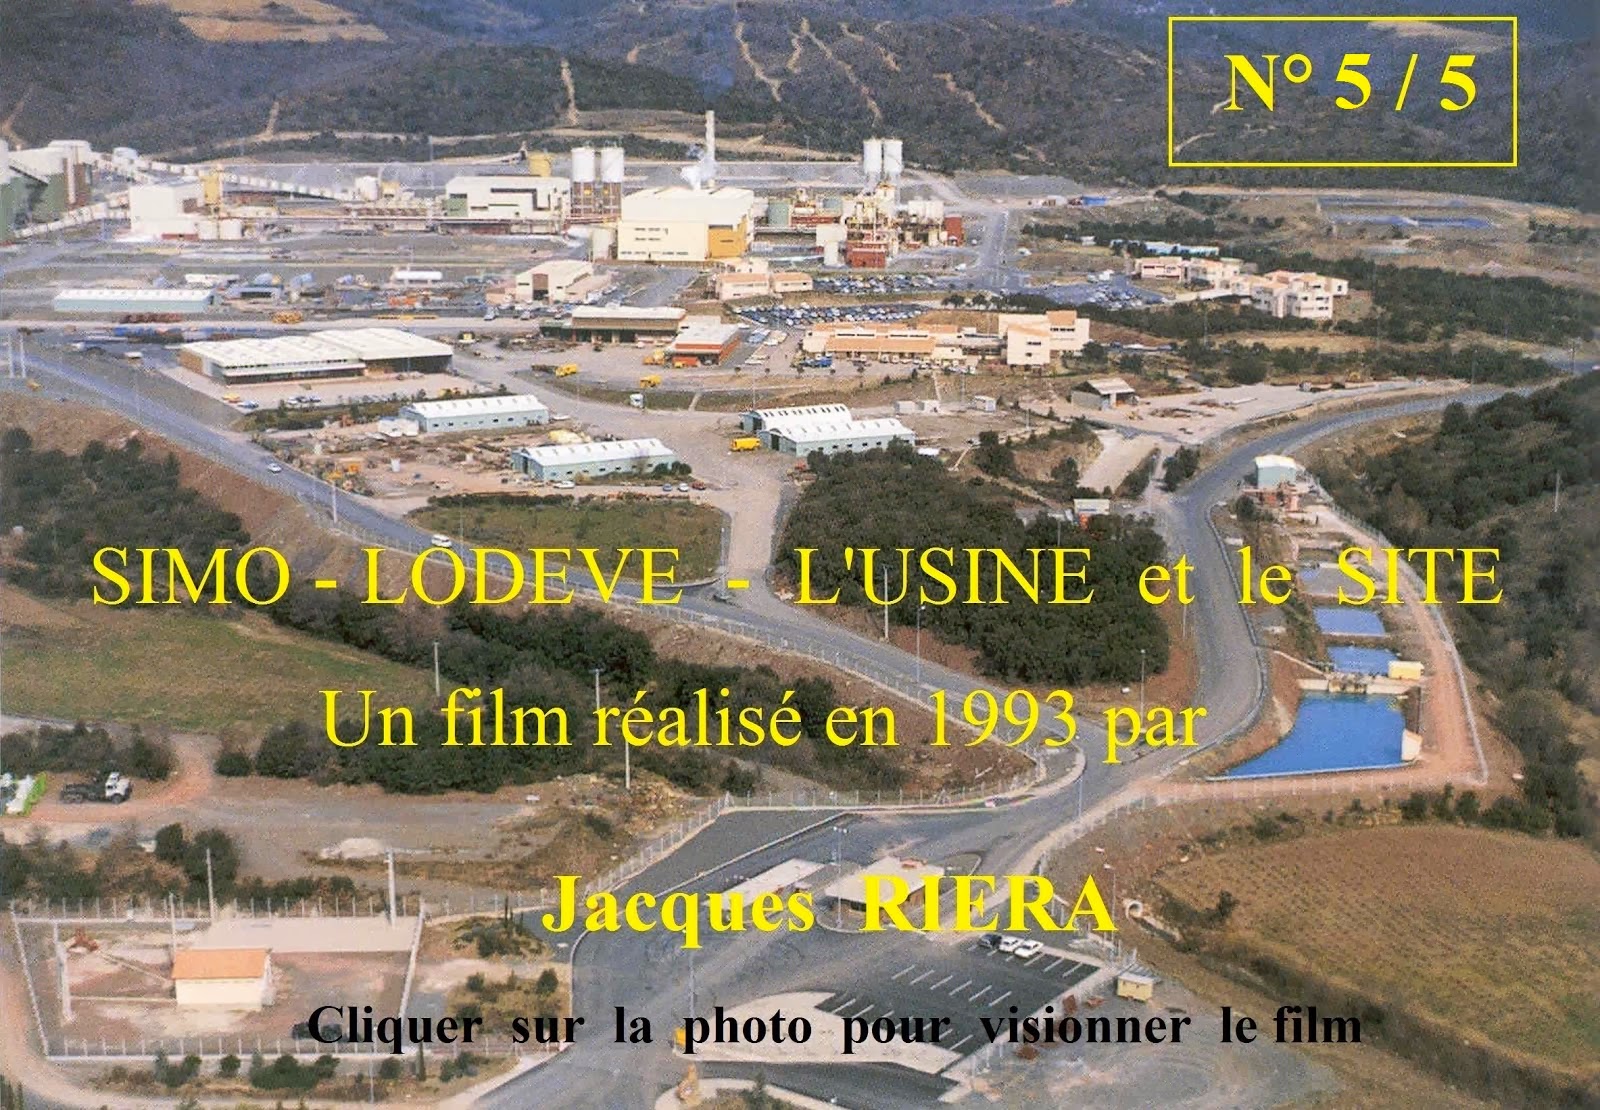 5/5 - La SIMO Lodève 1993 un film de Jacques RIERA - Cliquer sur la photo pour visionner